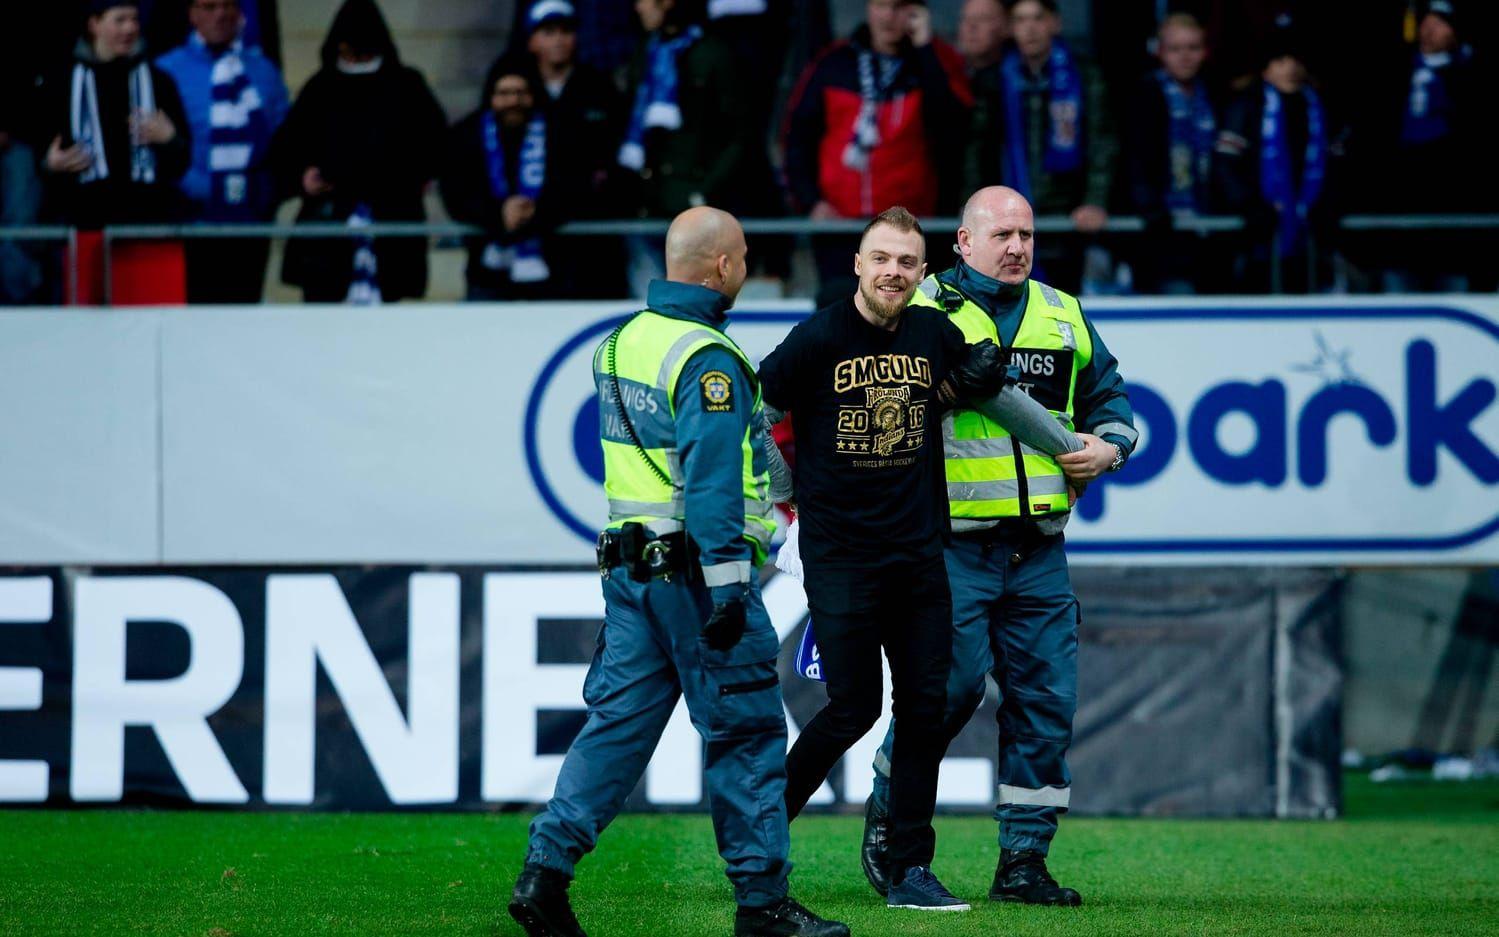 Frölundas guldhjälte Mats Rosseli Olsen förs bort av säkerhetspersonal sedan han stormat planen: Bild: Bildbyrån